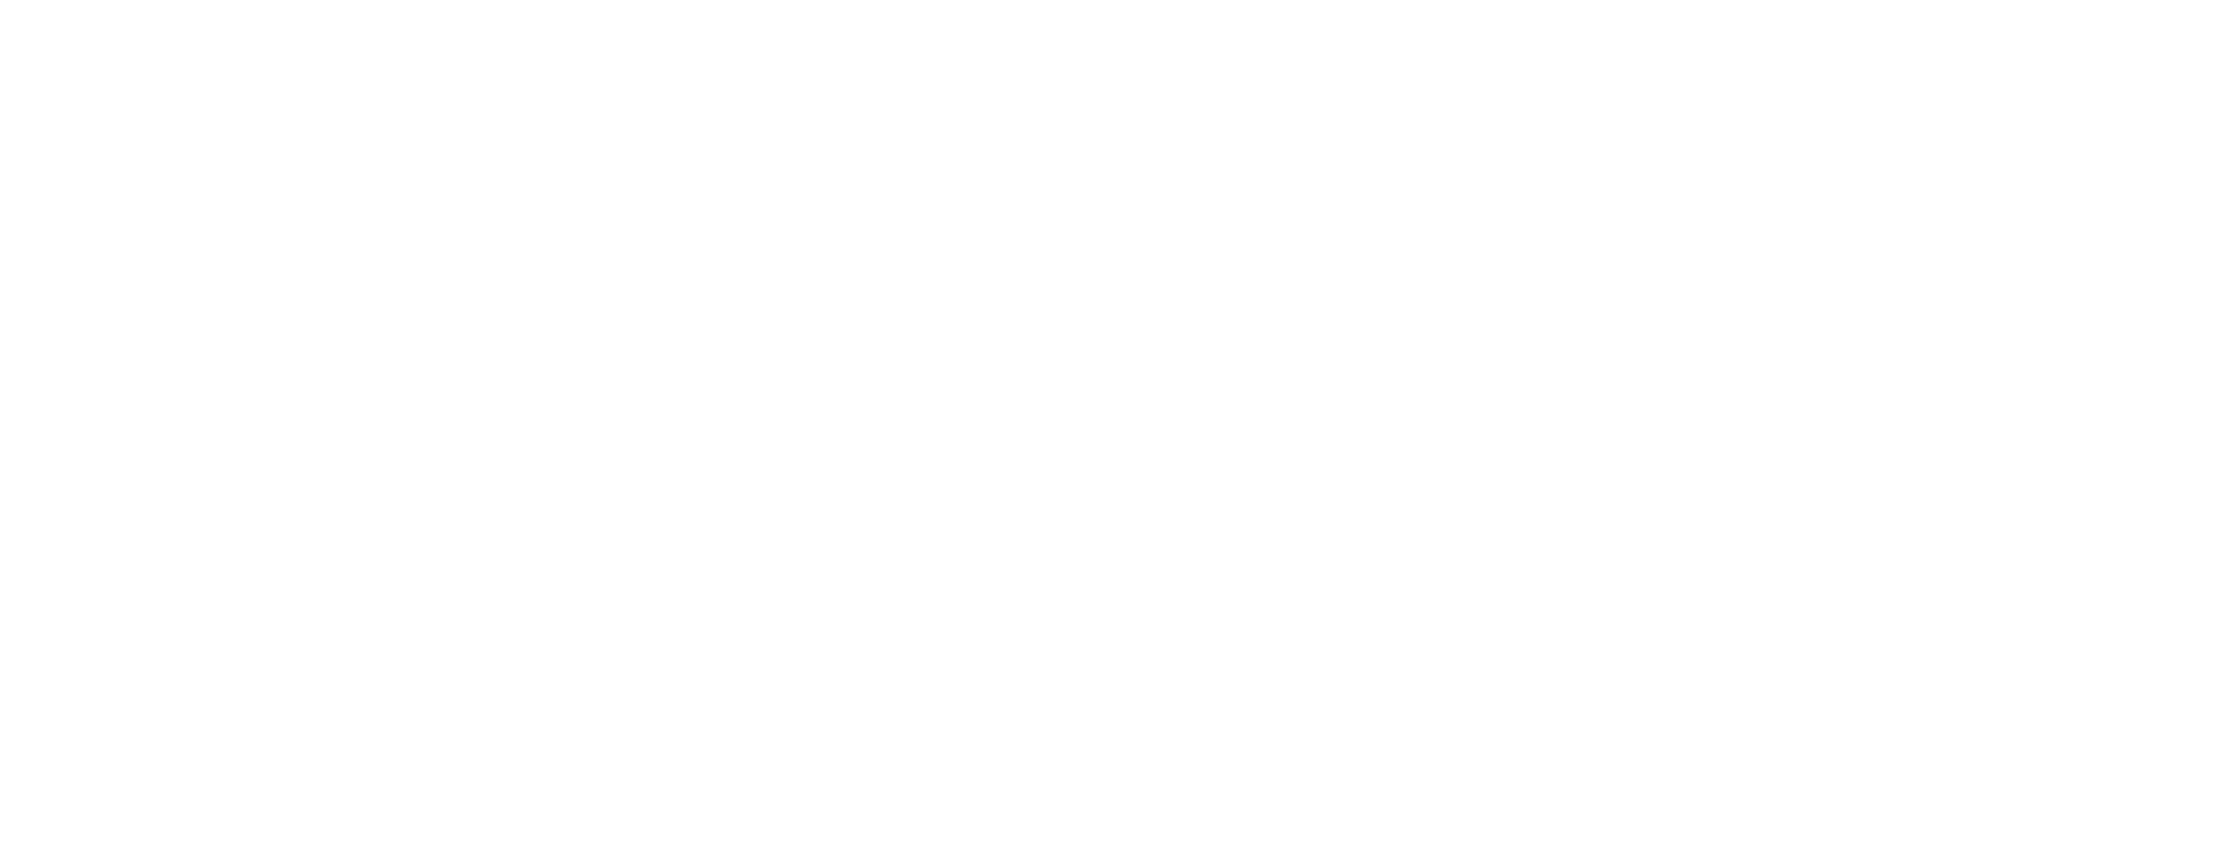 town garden hitchin florist logo branding